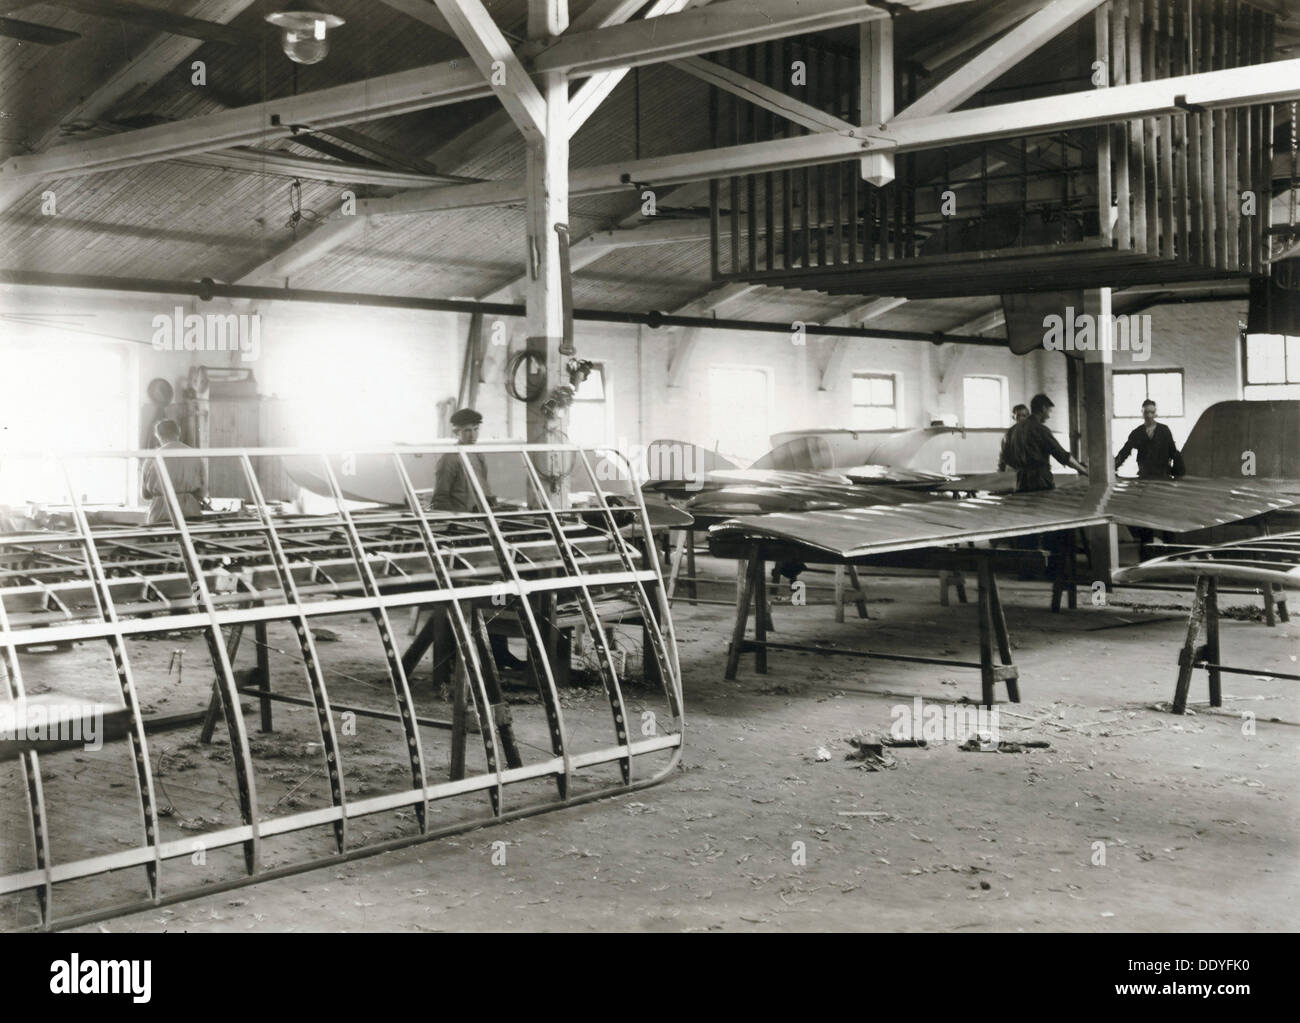 El taller de ala, Enoc Thulin la fábrica de aviones, Landskrona, Suecia, 1917. Artista: Desconocido Foto de stock